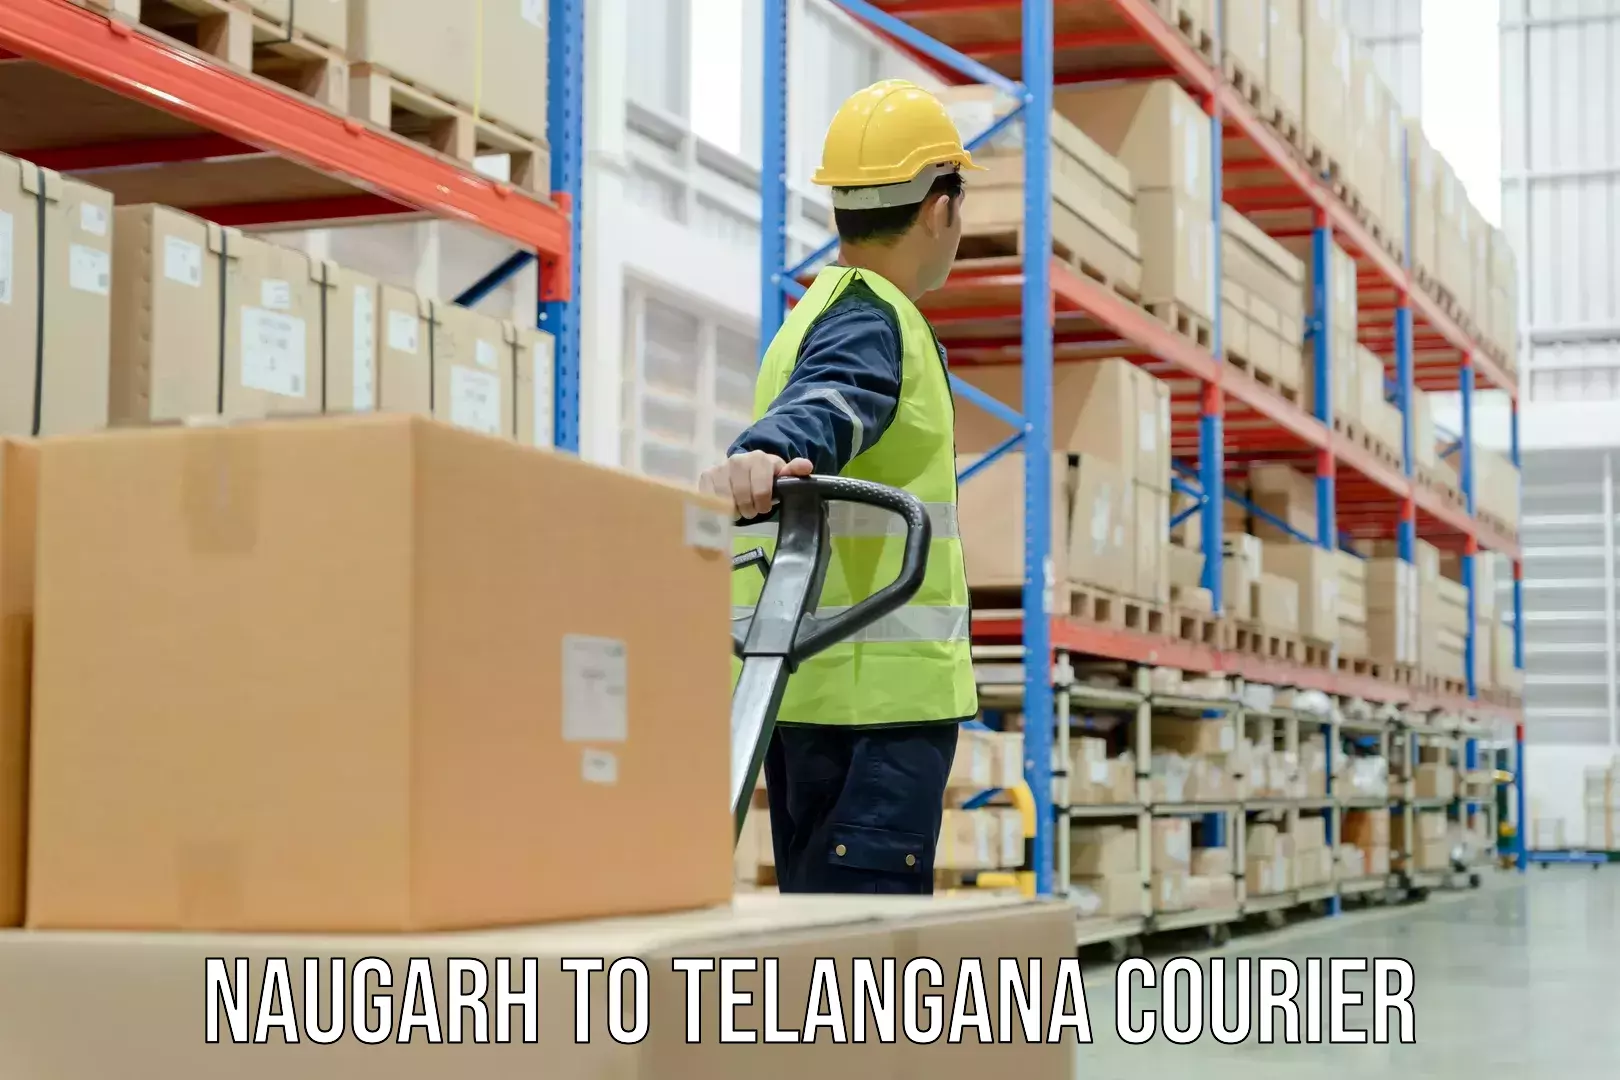 Heavy parcel delivery Naugarh to Karimnagar